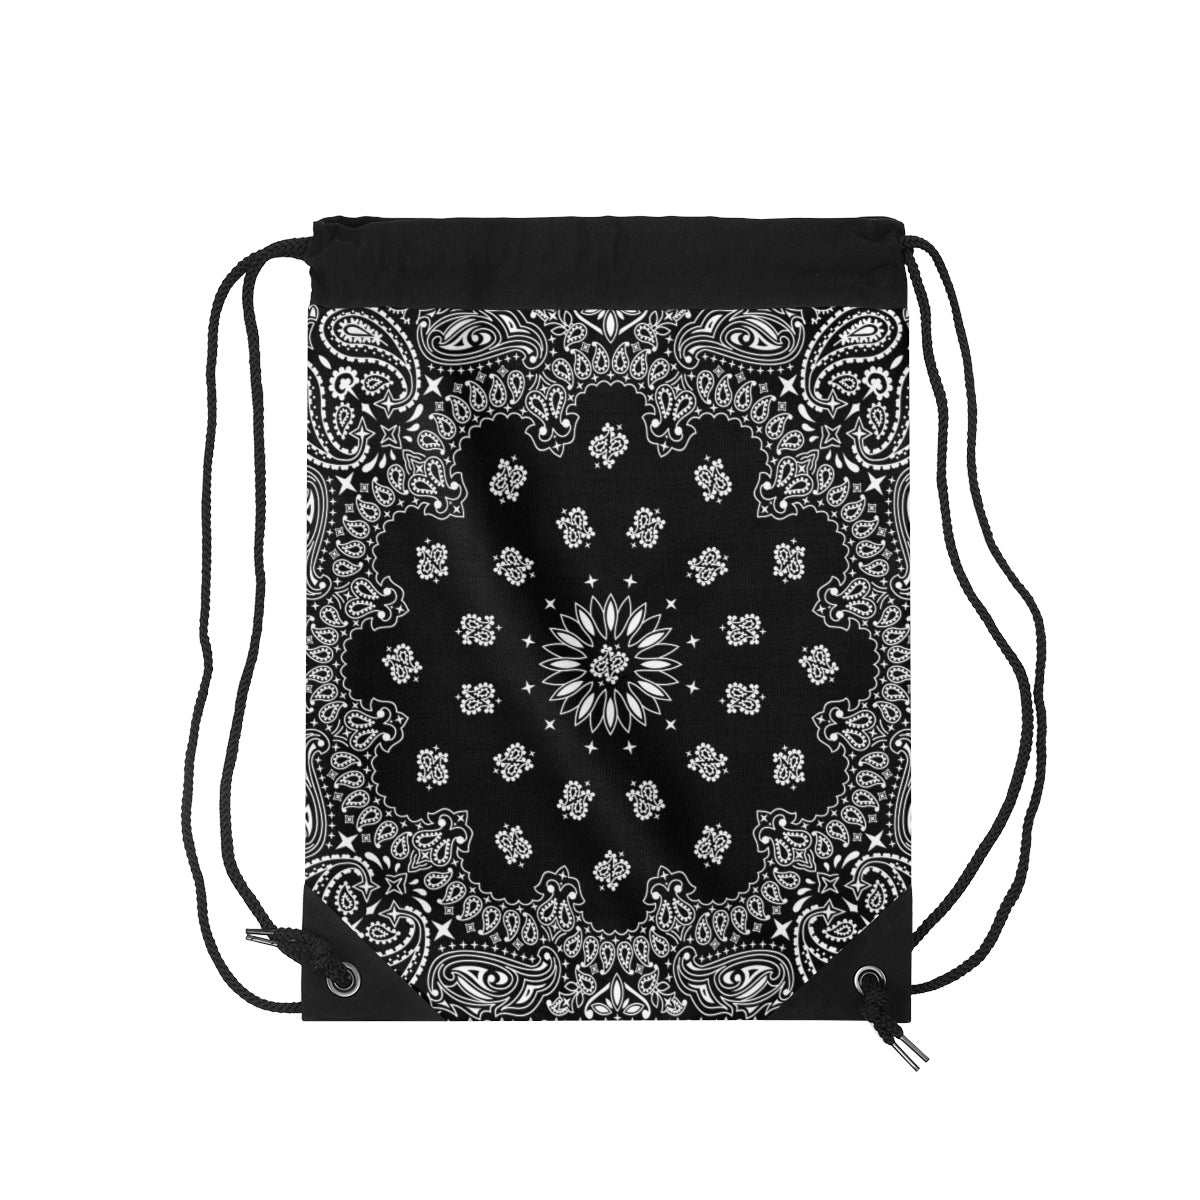 Black Bandana Drawstring Bag-One Size-Archethype